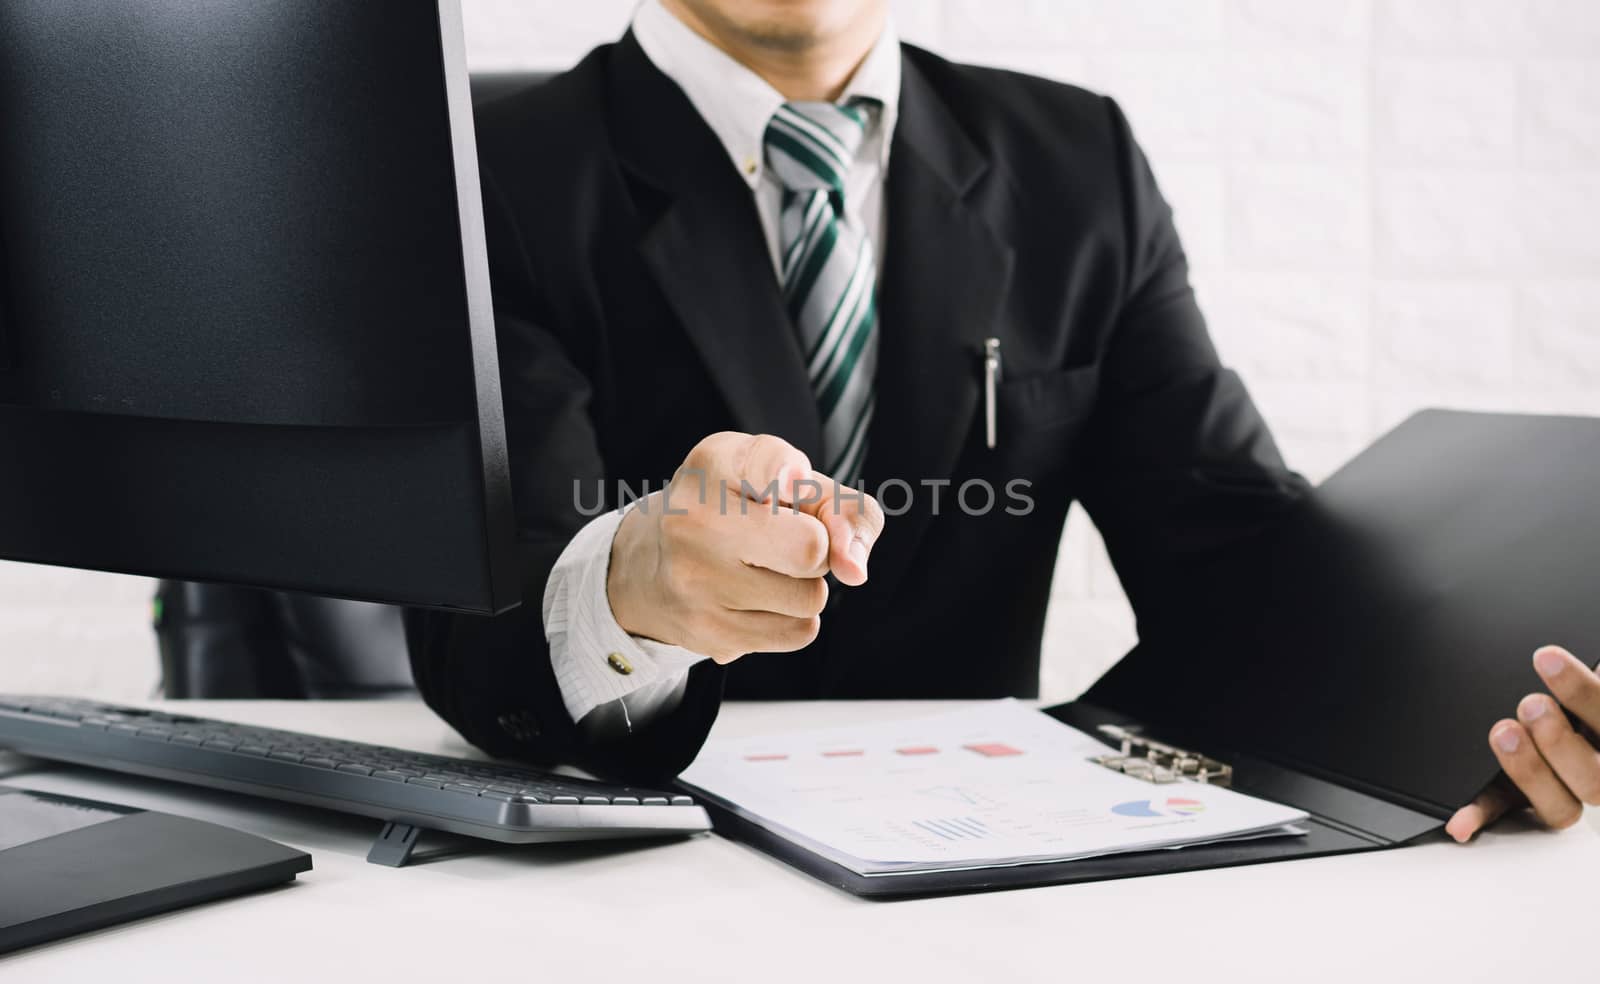 The boss business men pointing the finger on the desk  by sompongtom